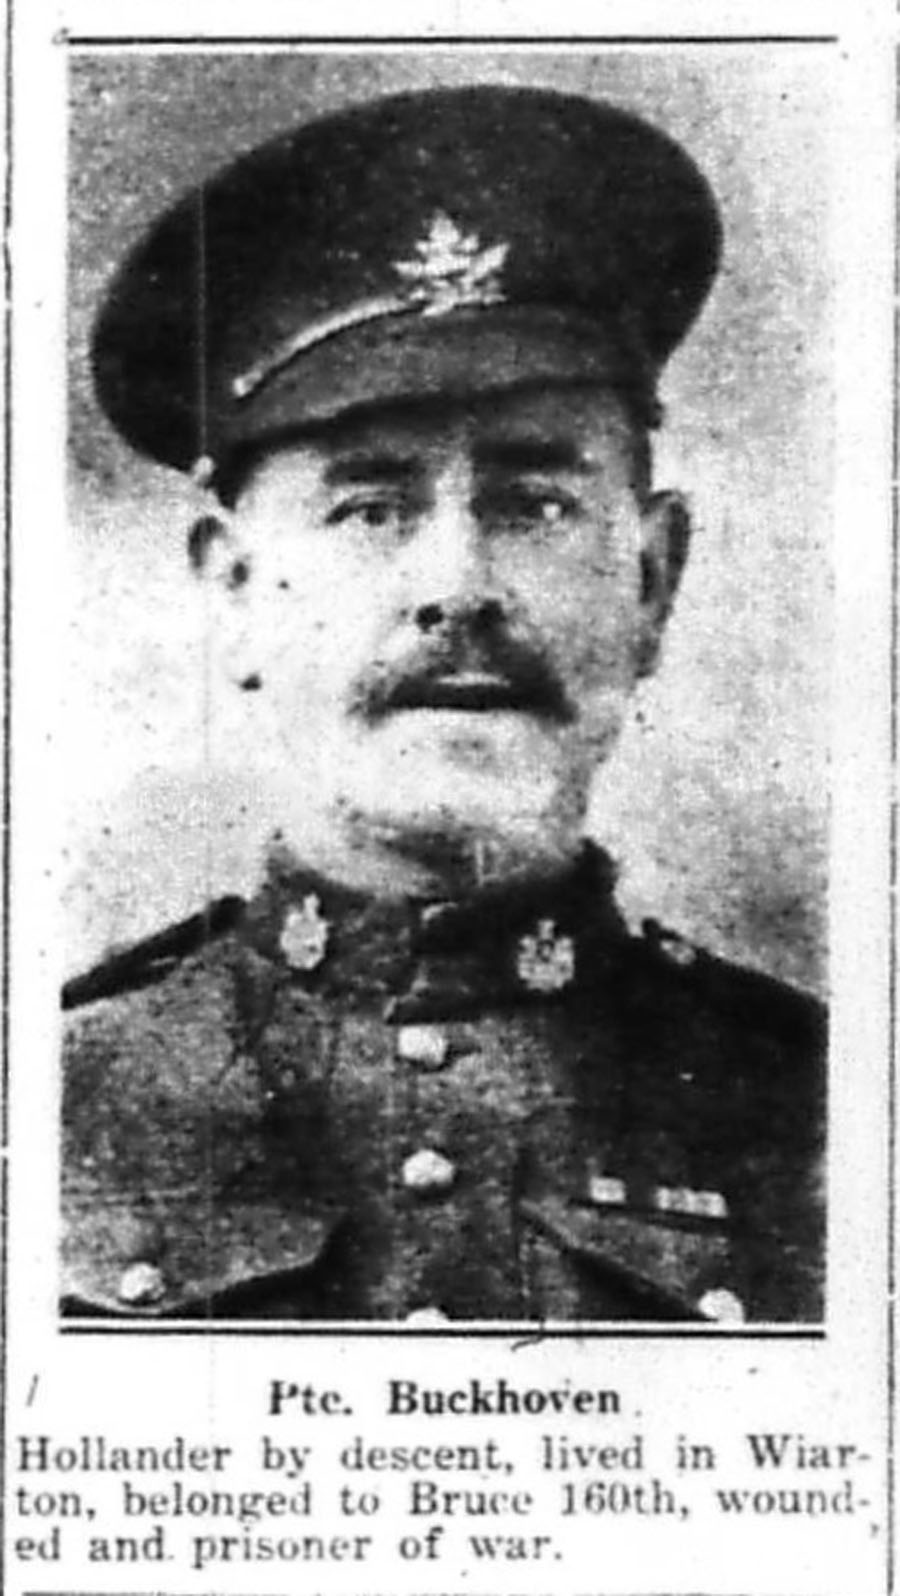 Canadian Echo, October 9, 1918